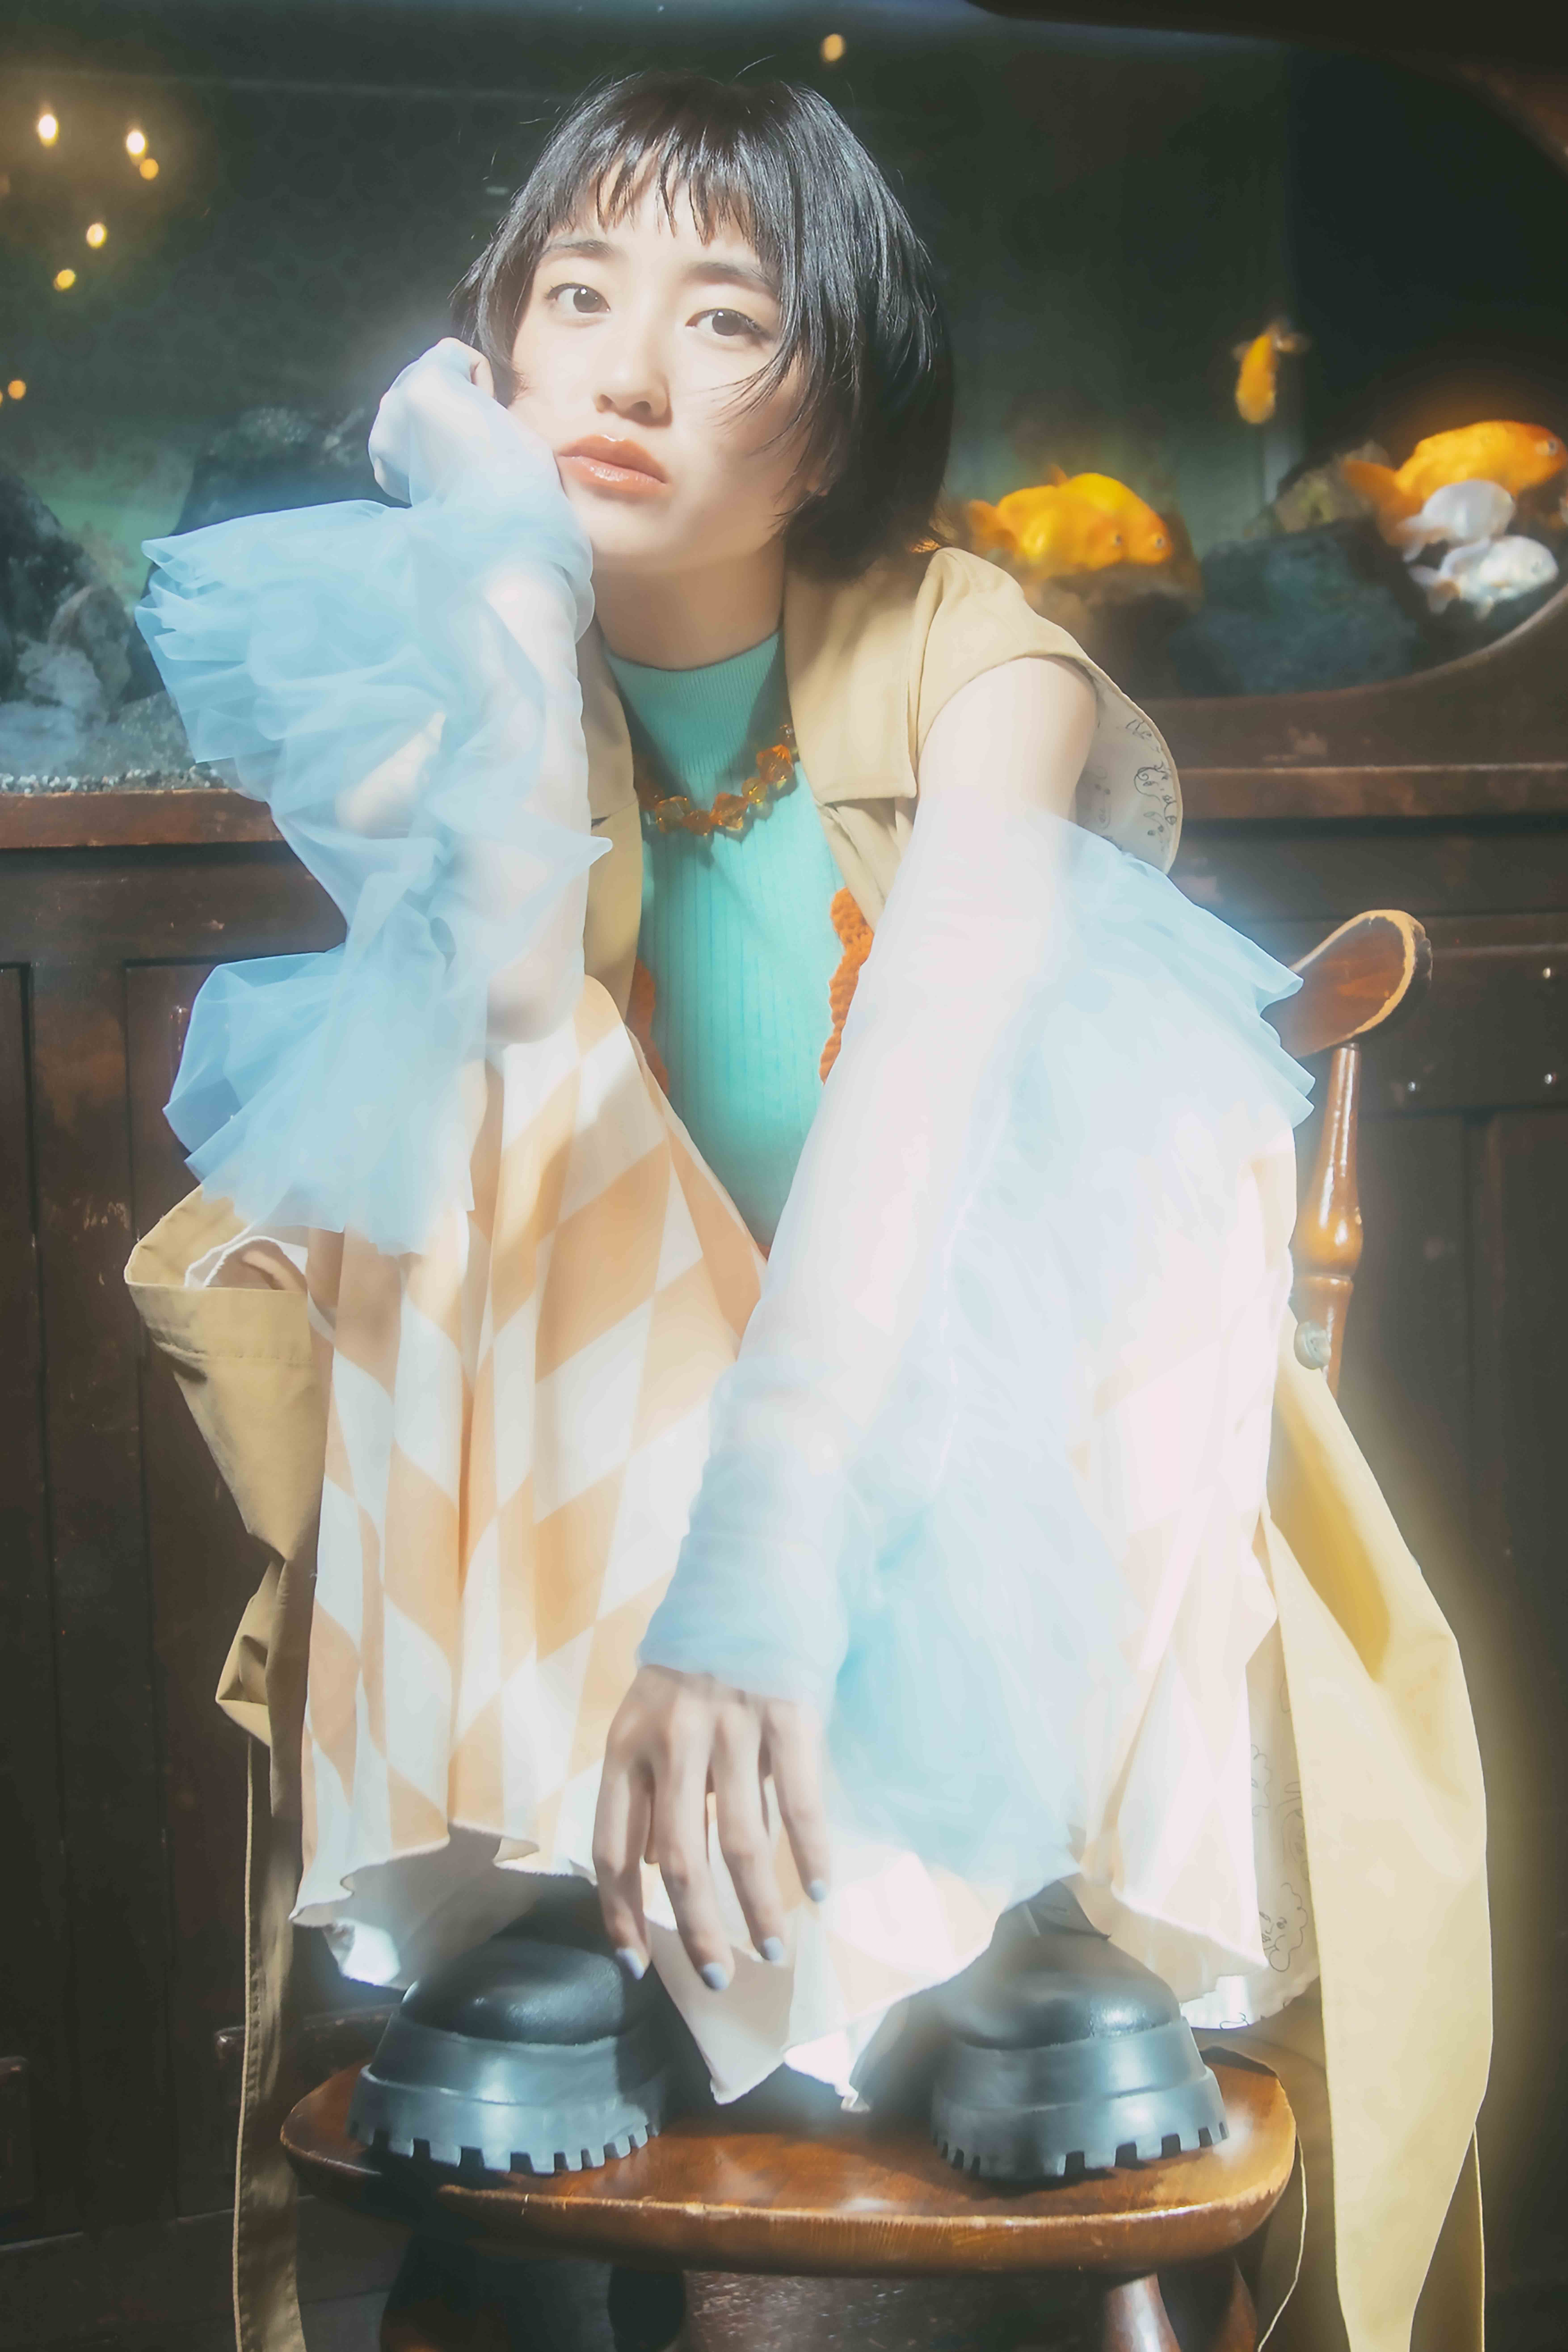 ツチヤカレン、メジャーデビューシングル『オキナワ』MVを公開！ 濱田“Peco”美和子 振り付けのダンスや自身の描き下ろしイラストも披露！